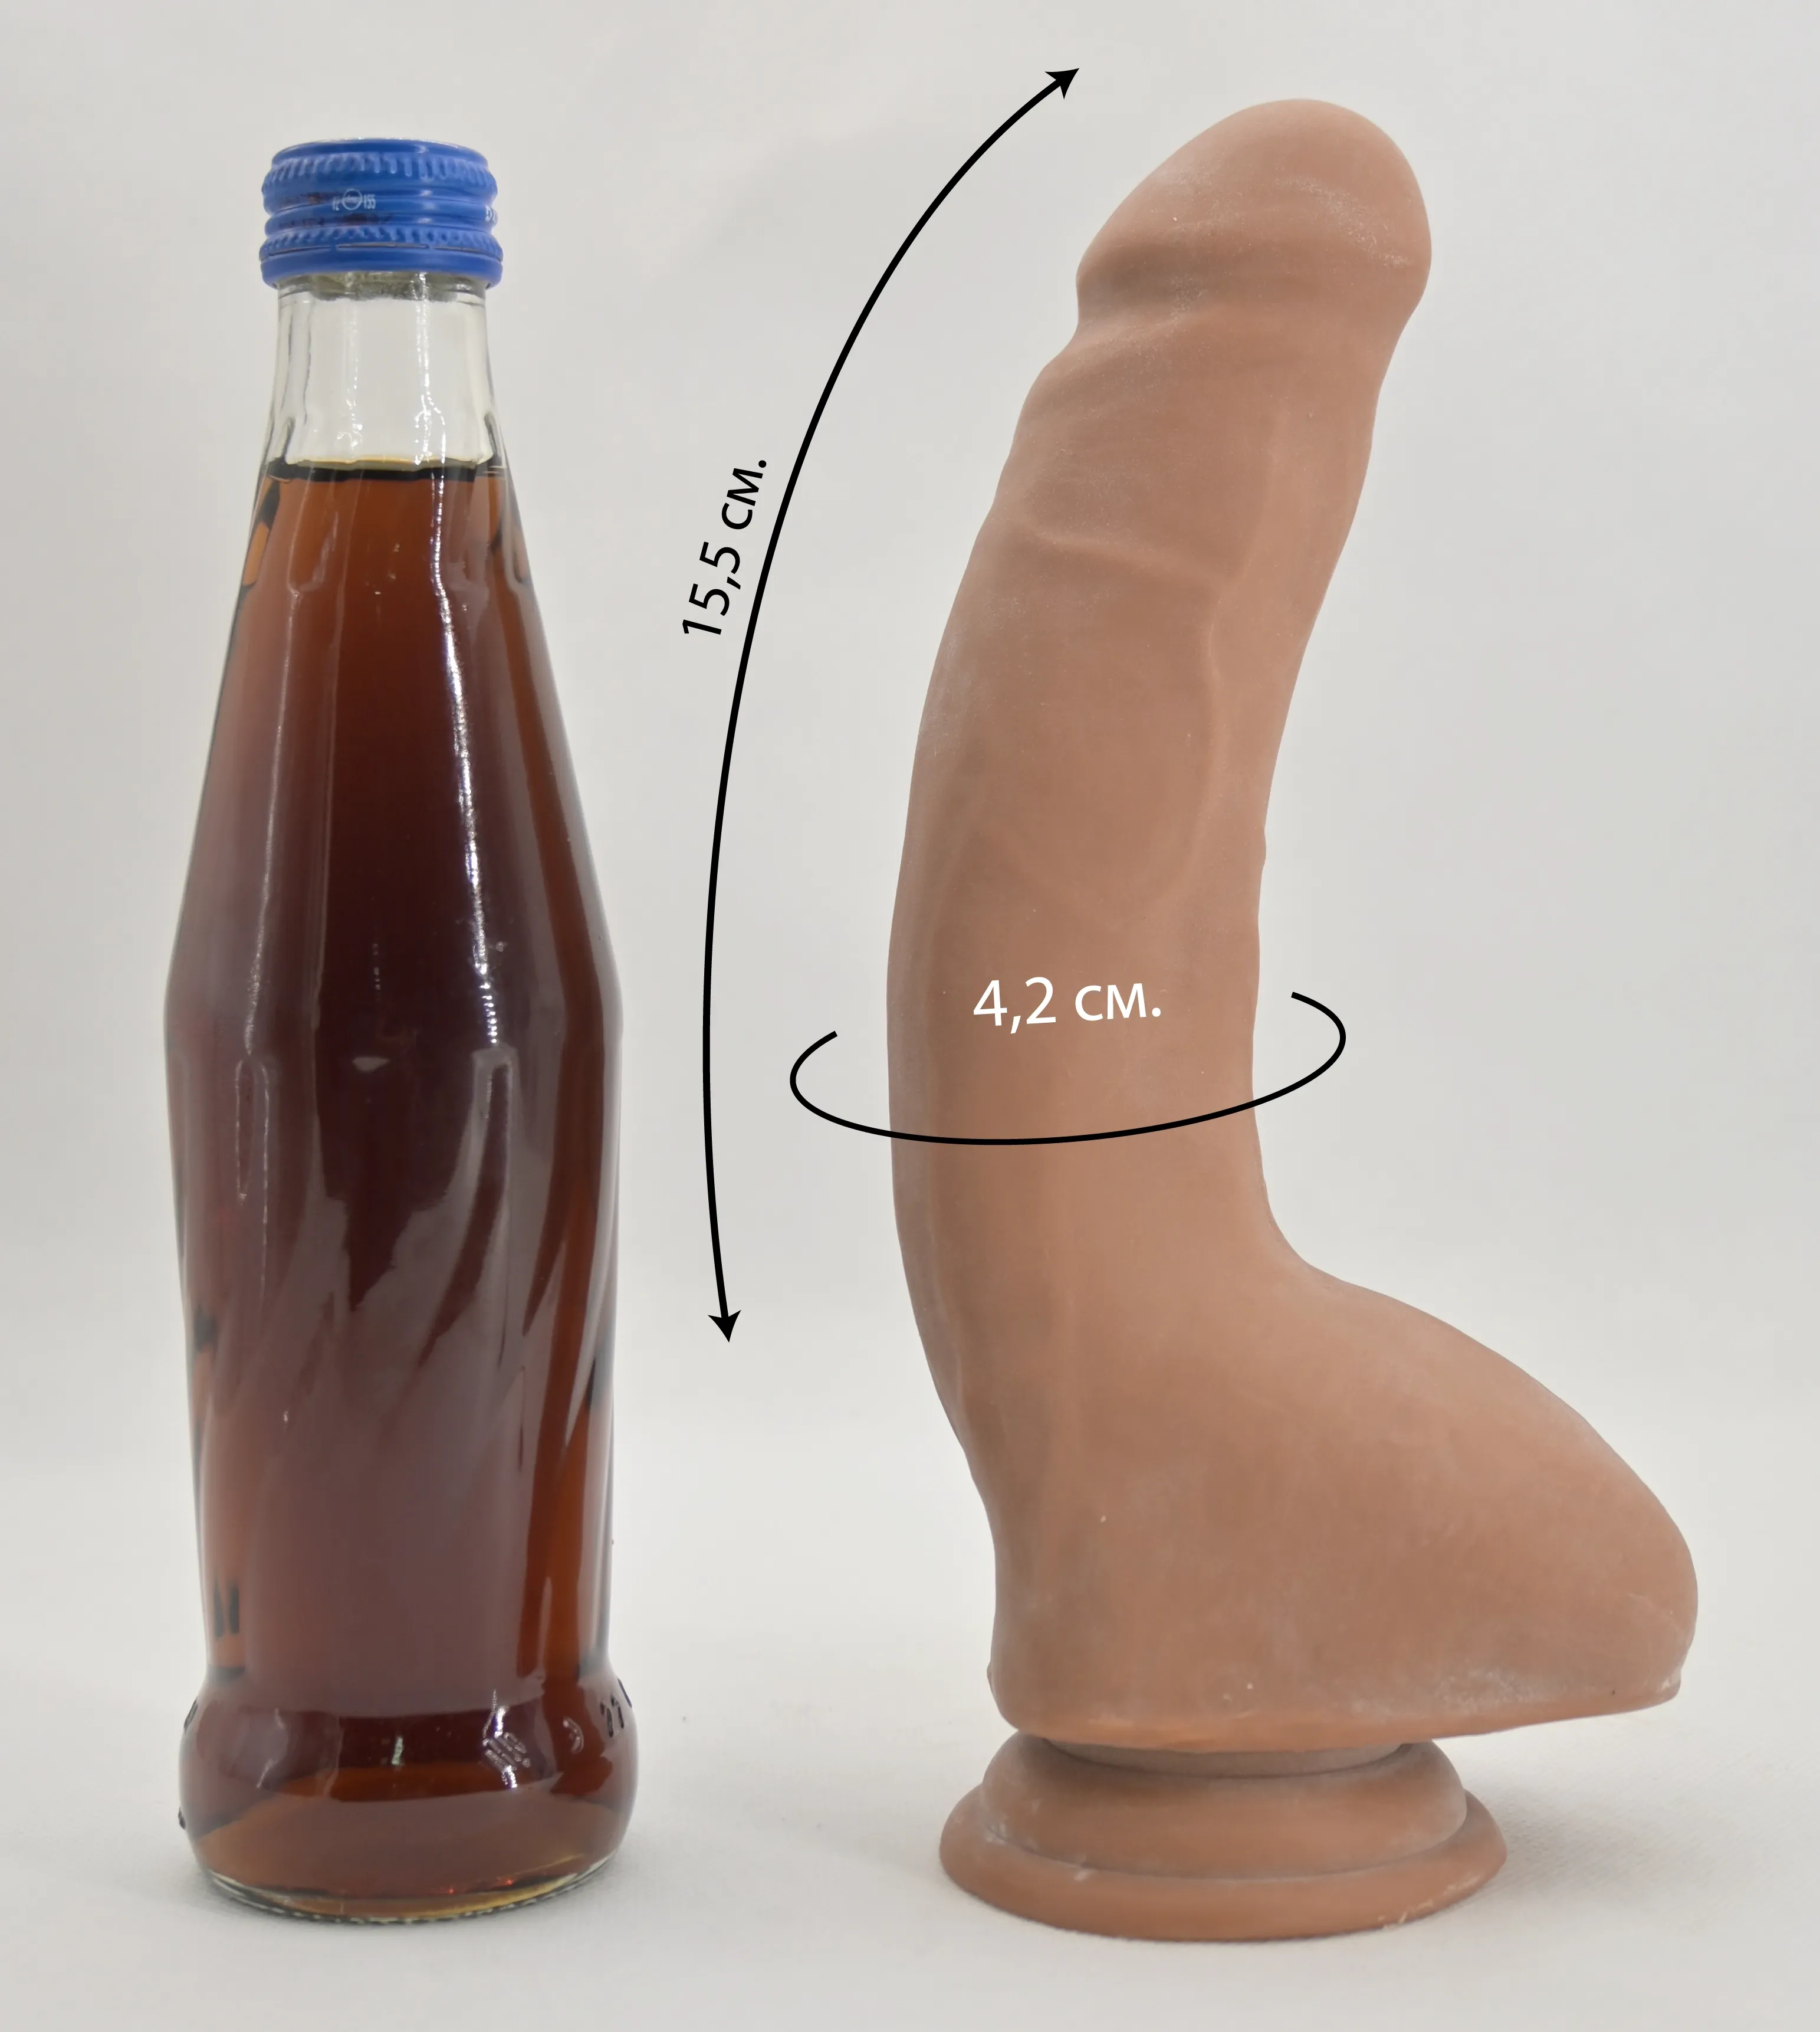 Размеры и сравнение Carnal Pleasure со стеклянной бутылкой 0,33 л.